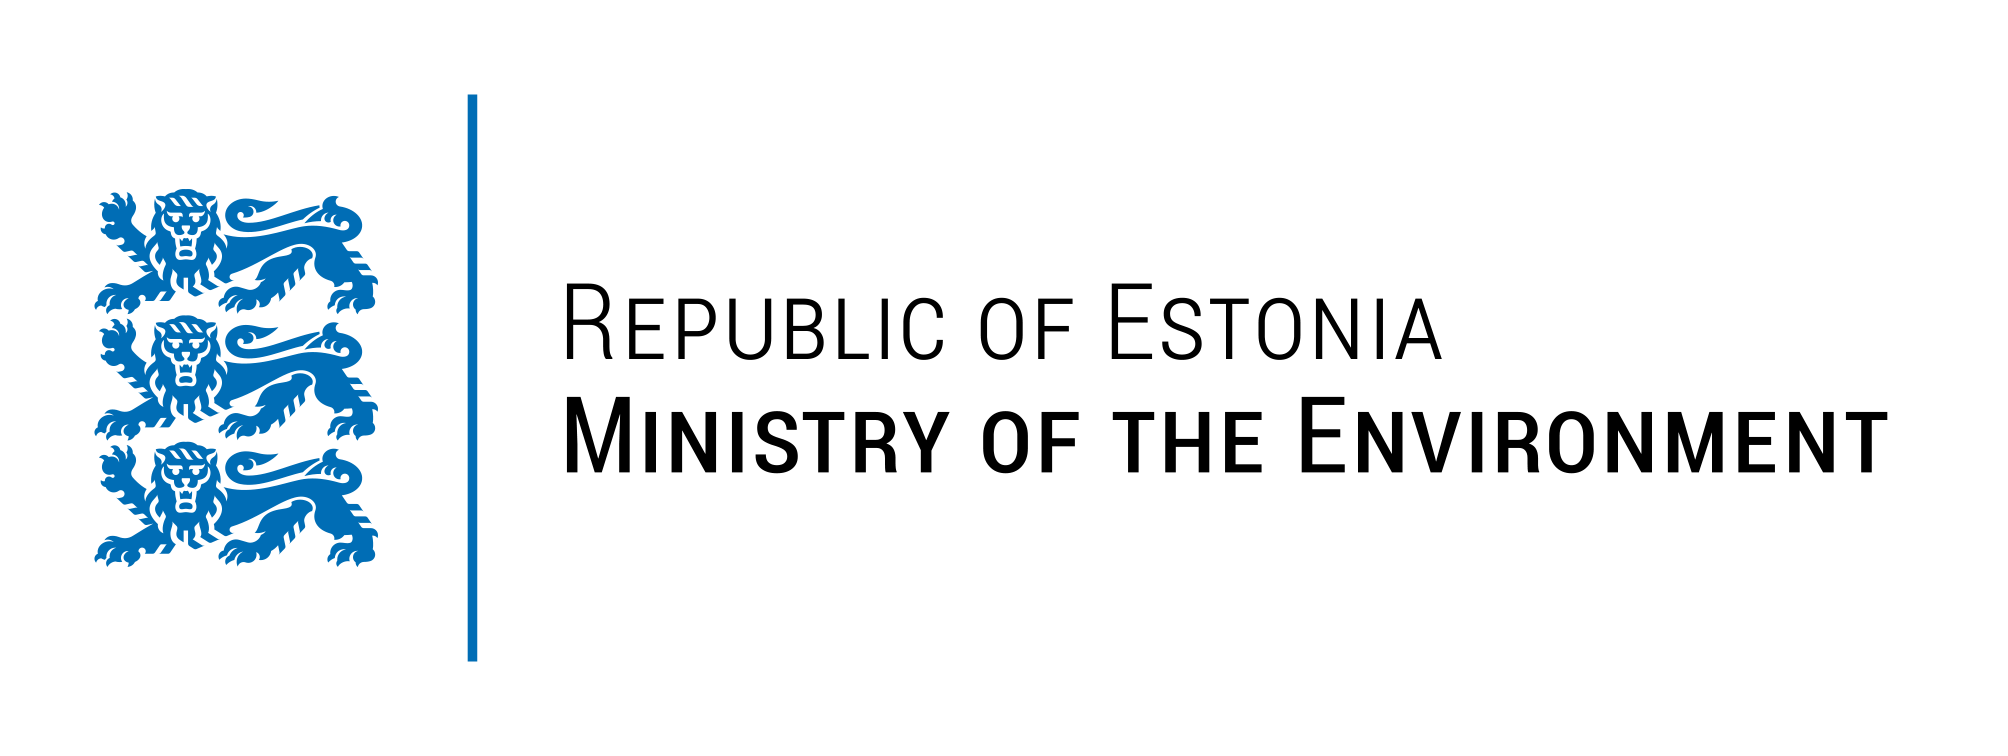 Environment logo eng.png